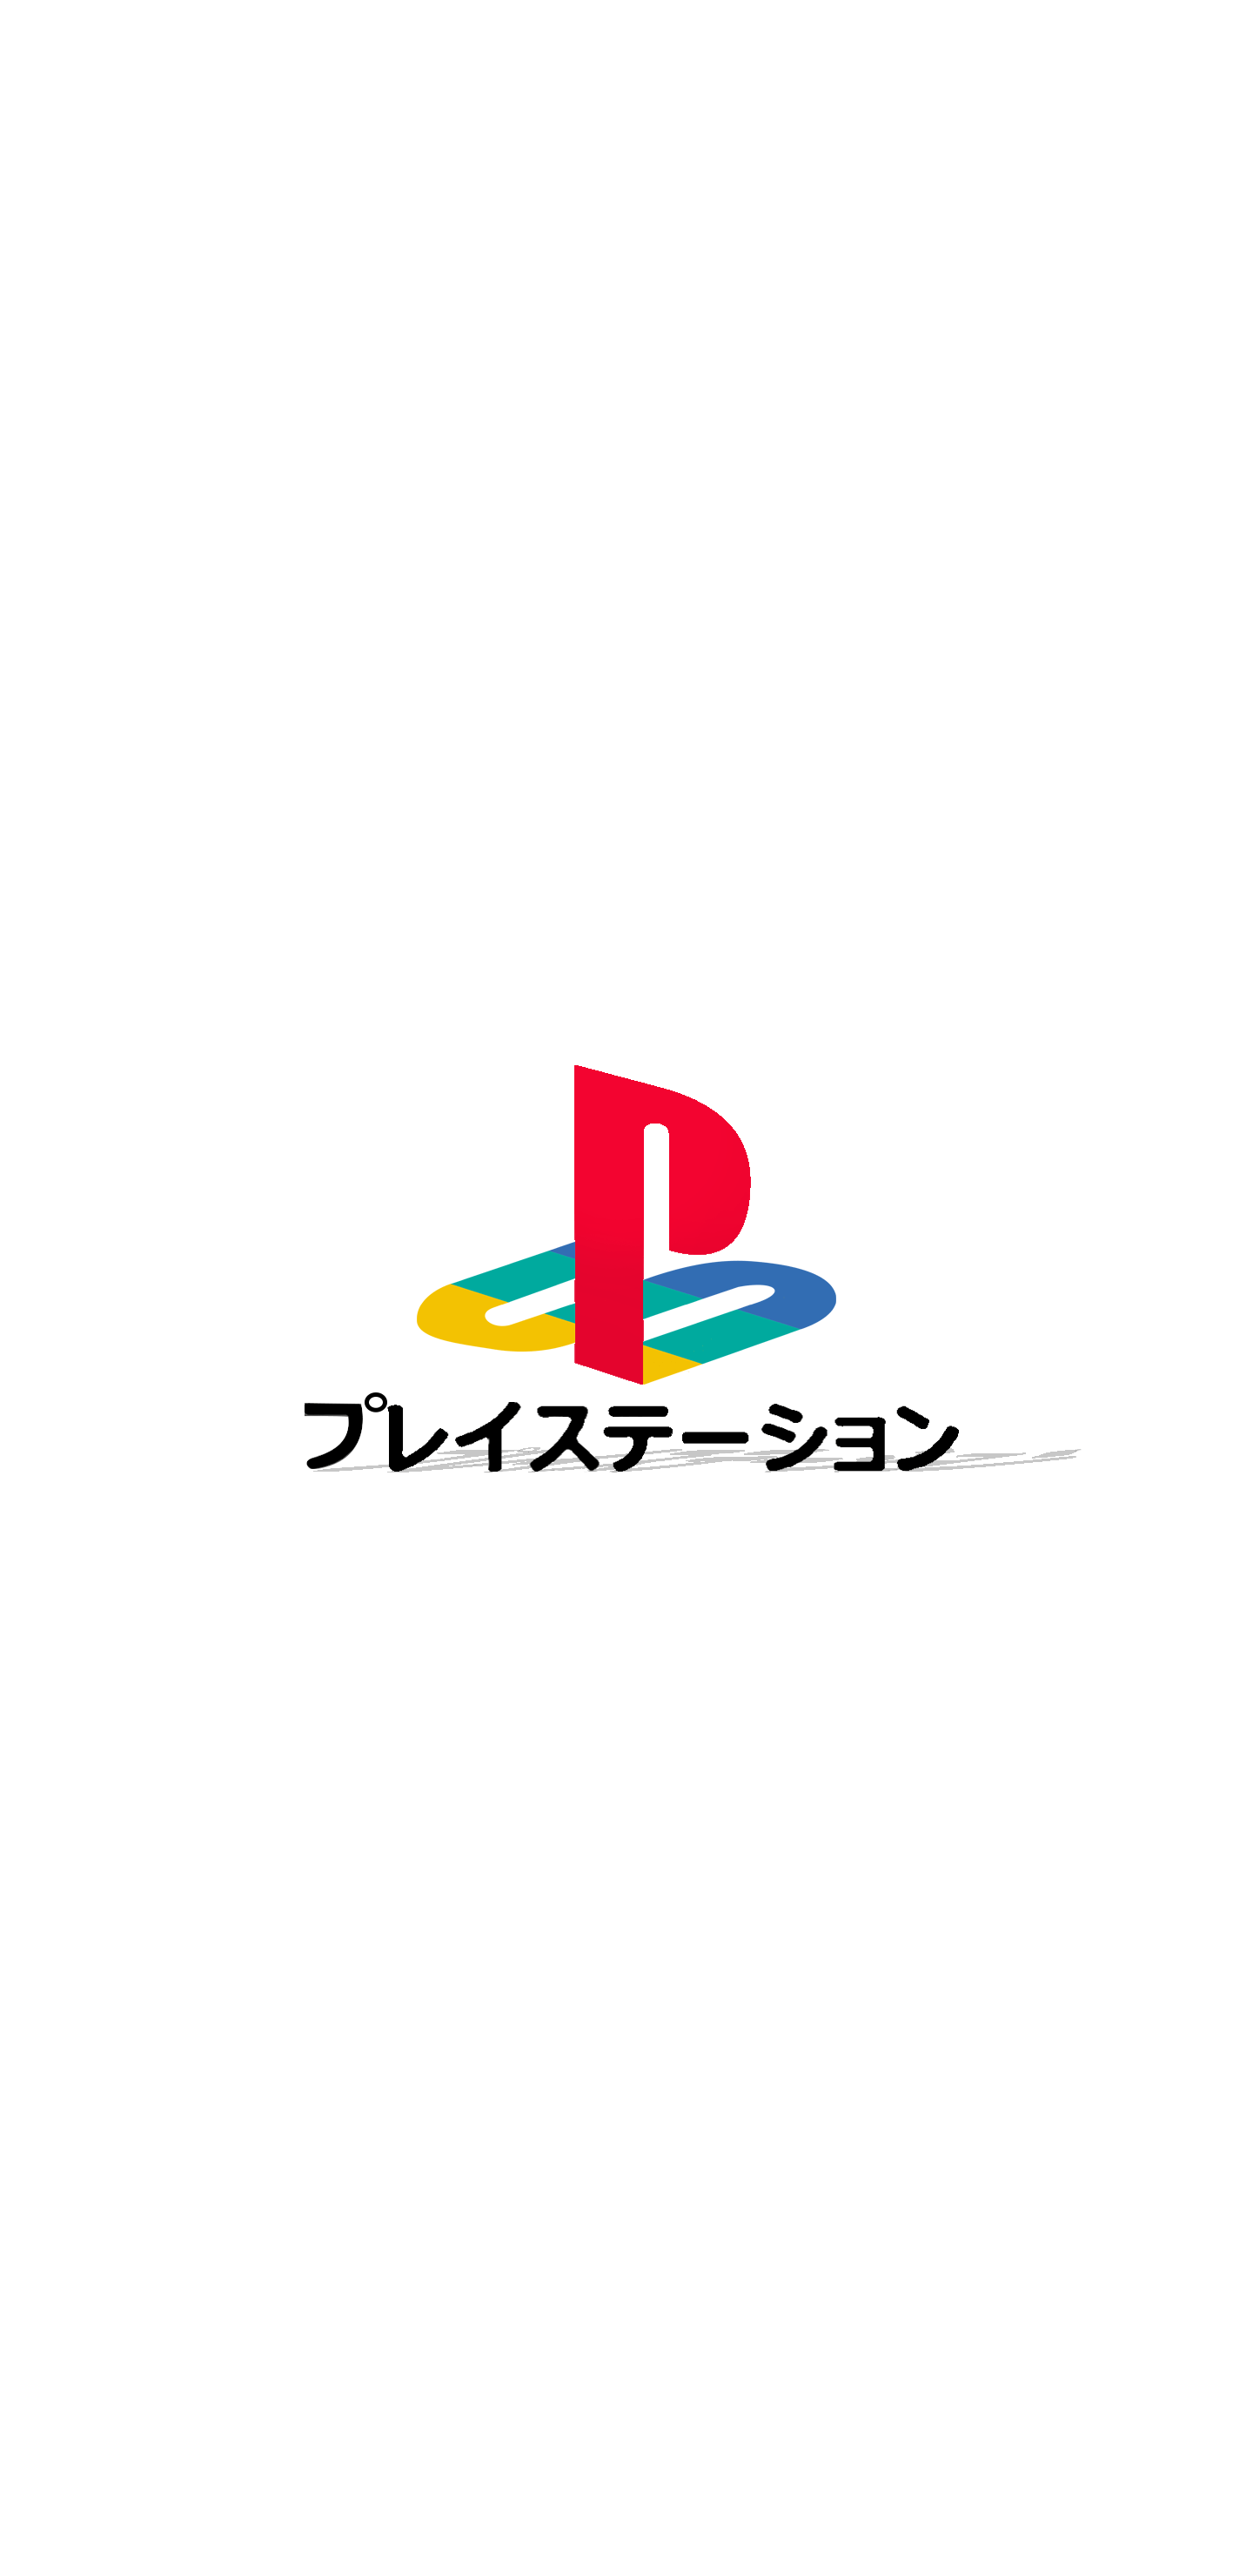 Playstation Logo with Katakana and Lighting 1440x2960